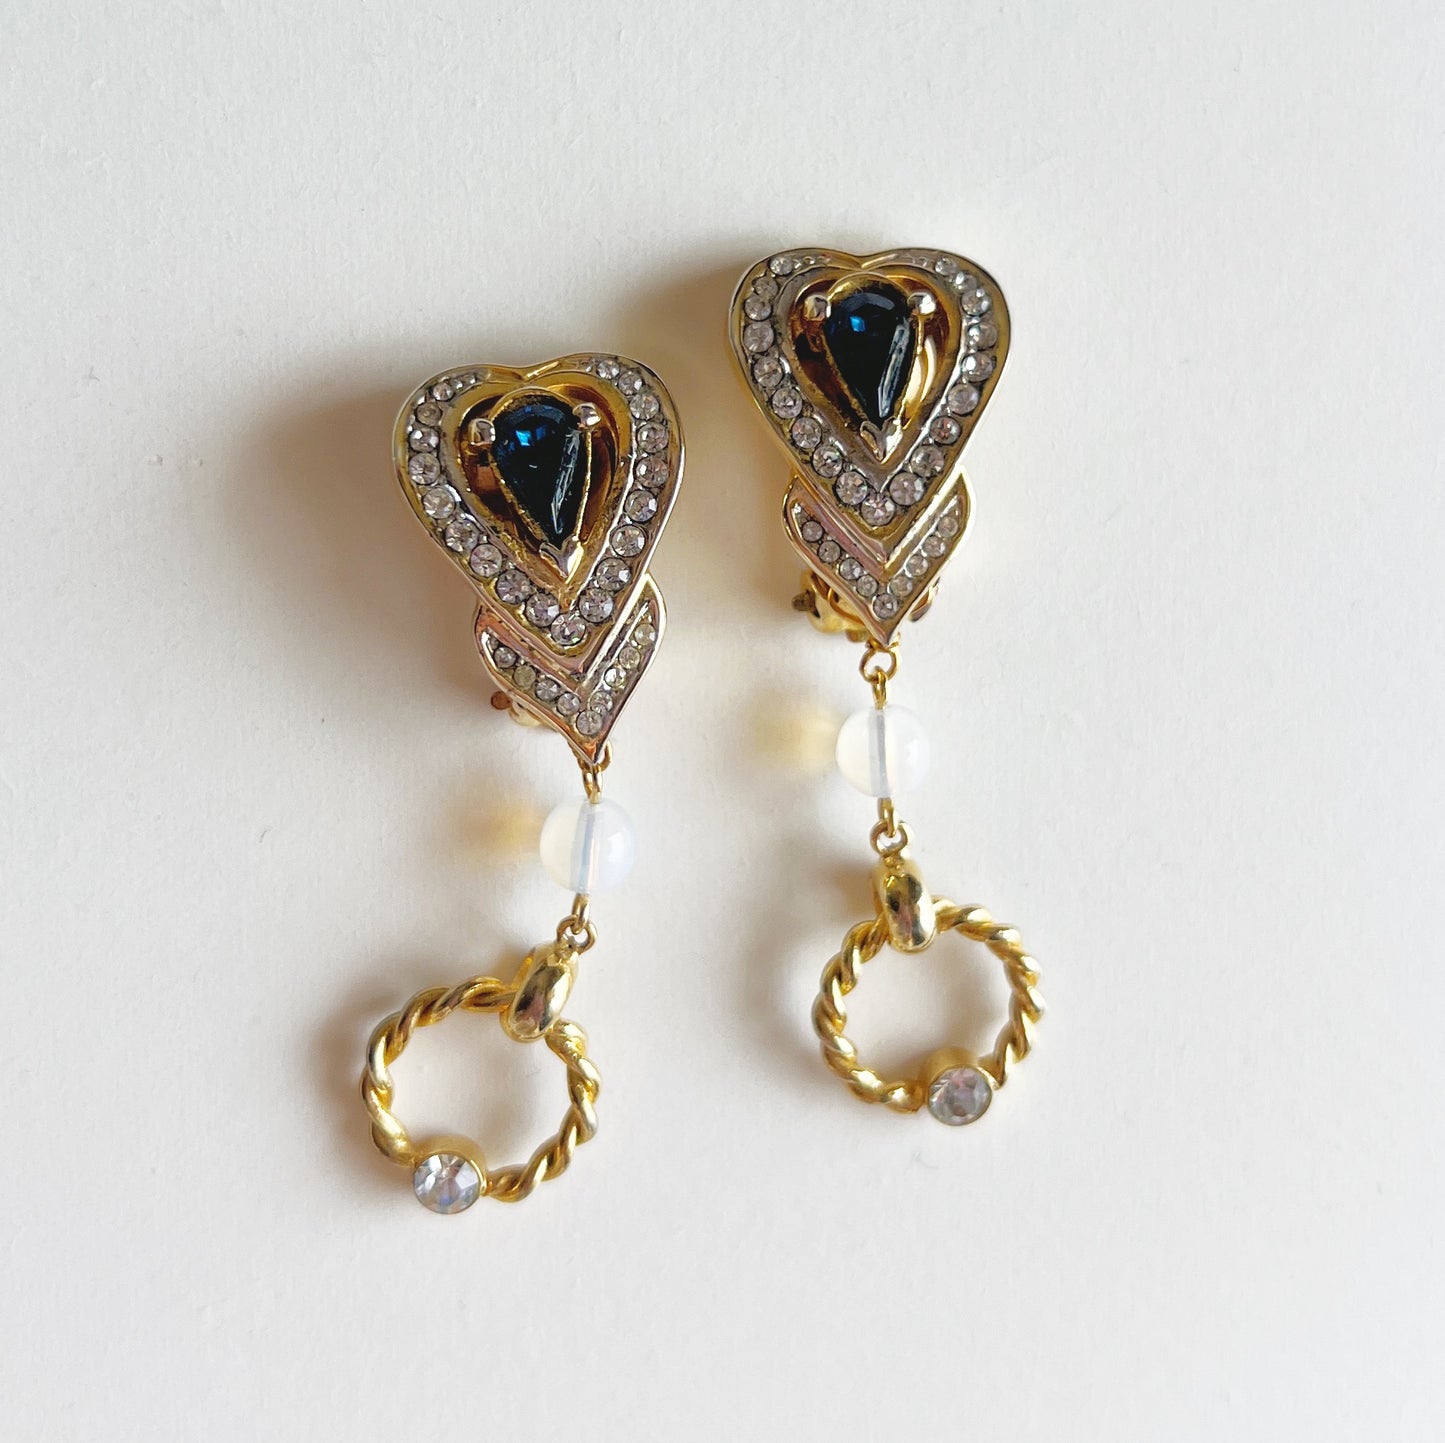 Blue heart earrings